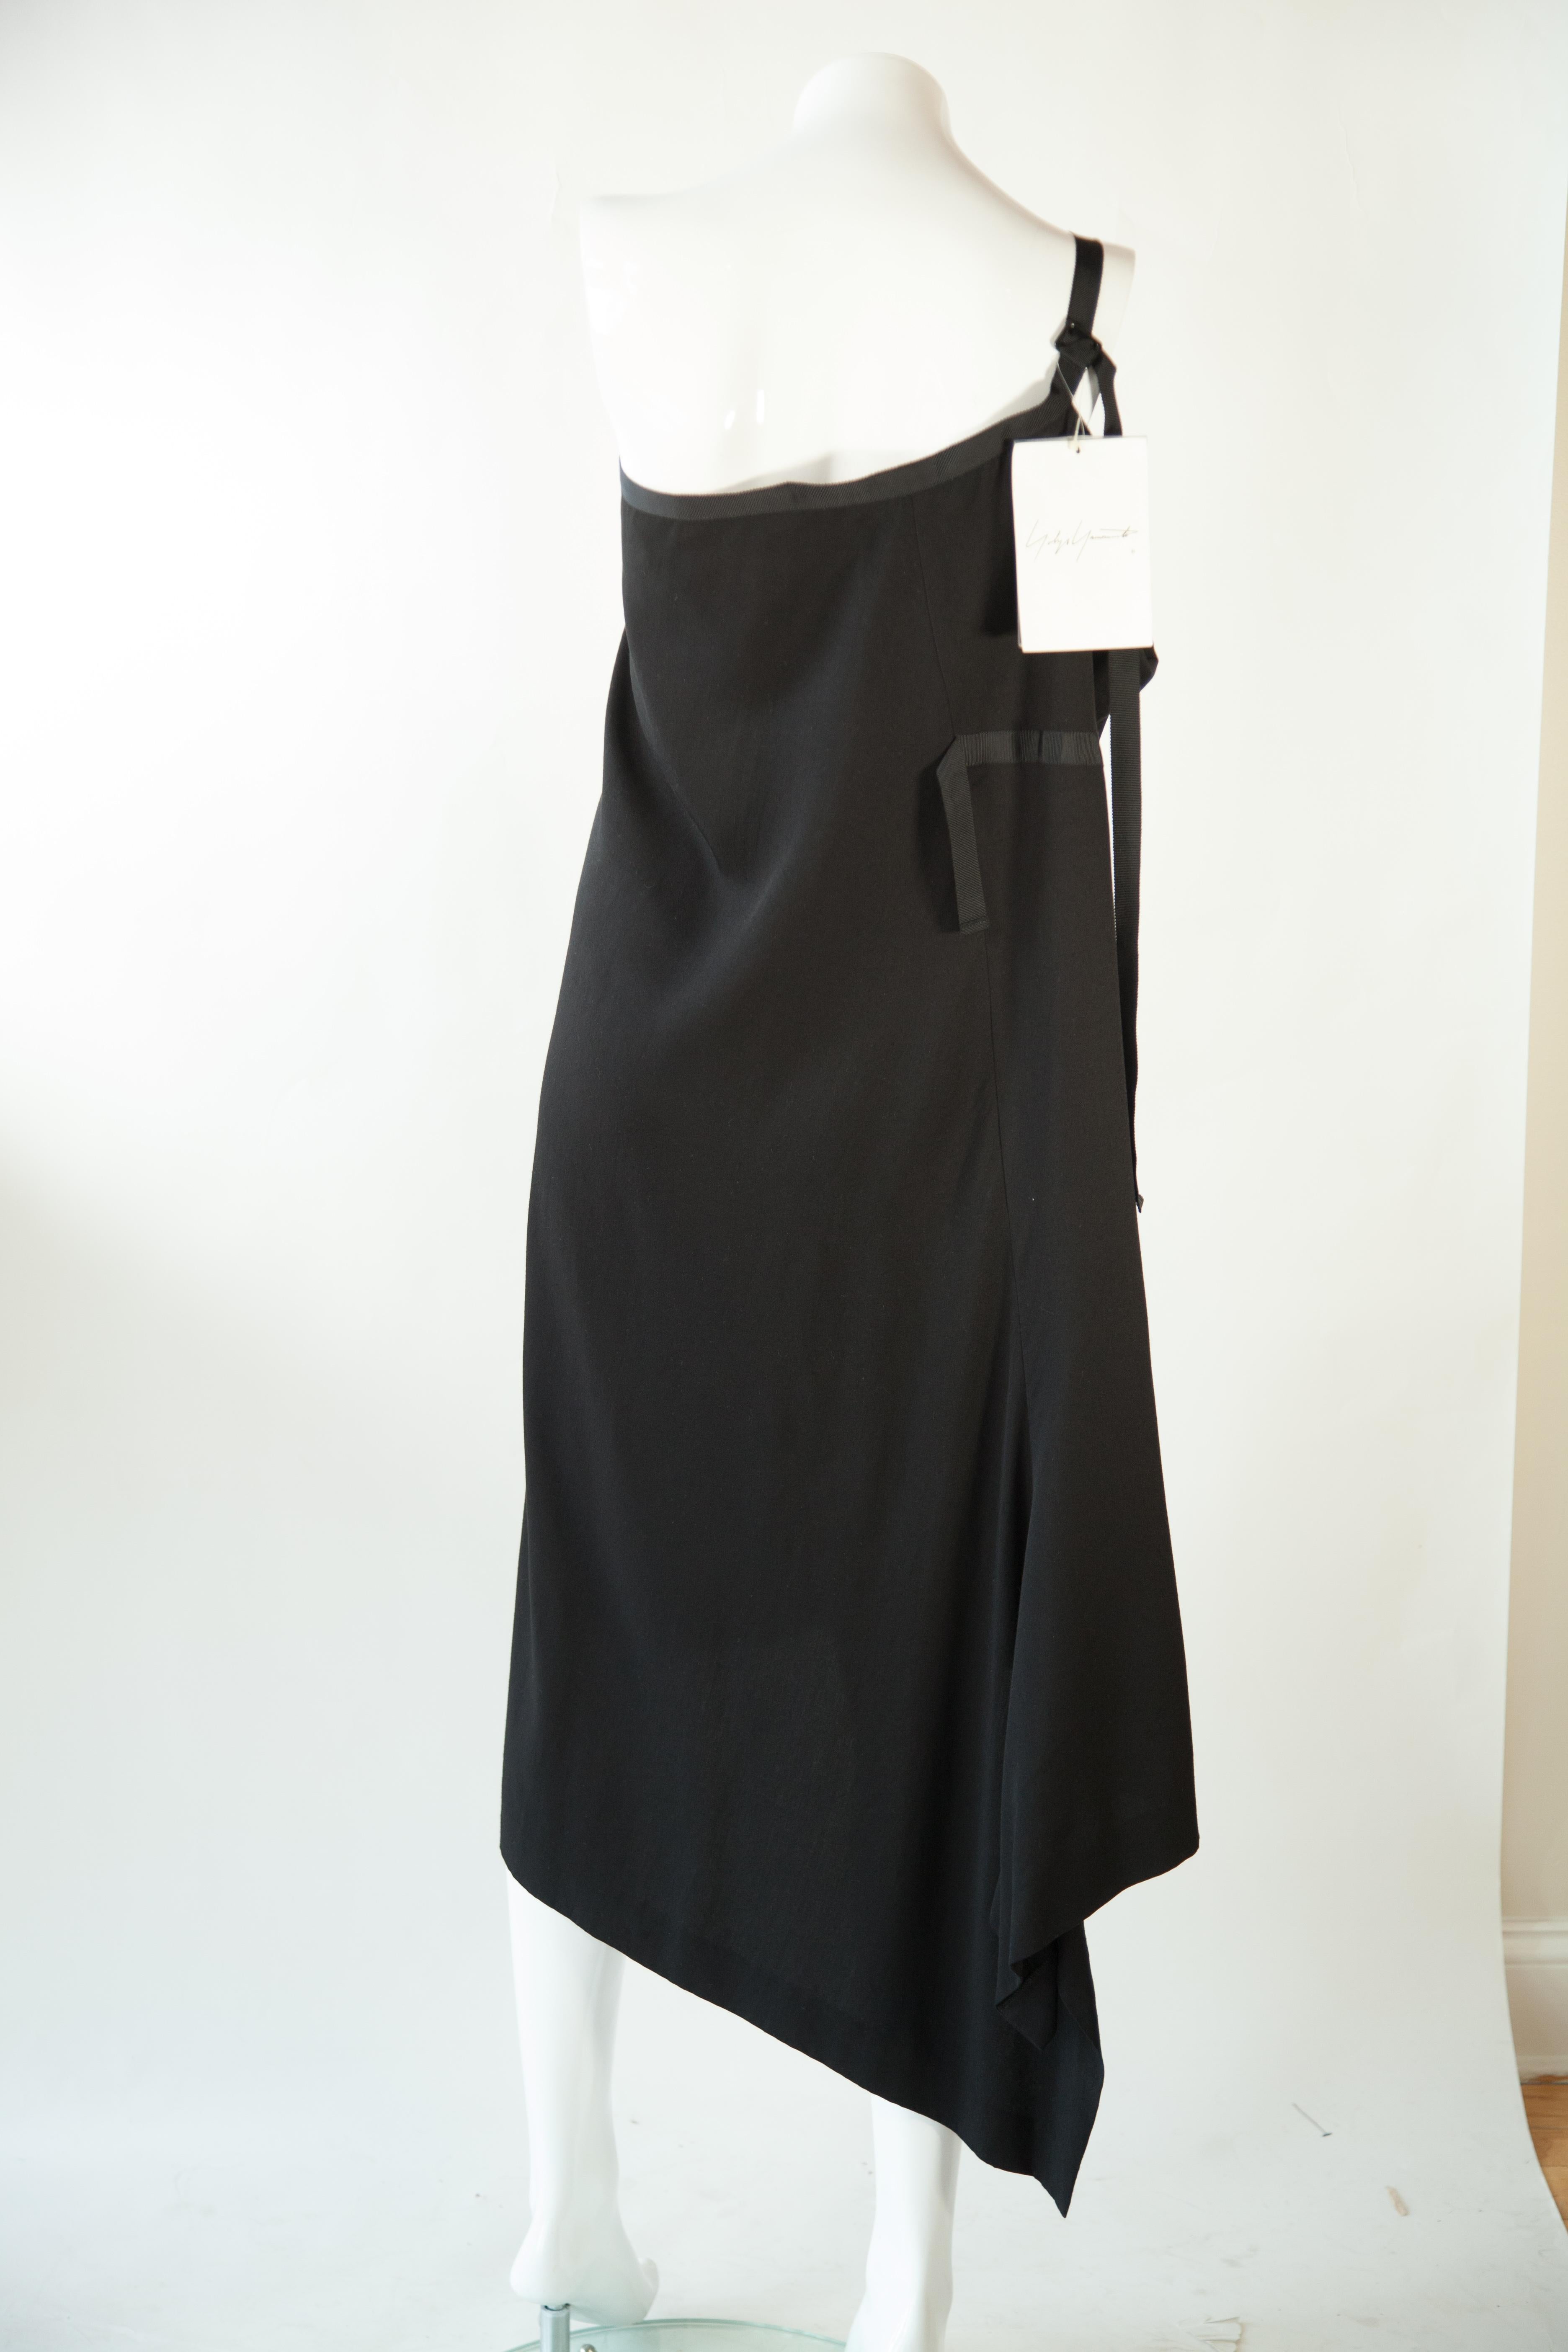 Diese schwarze Kombination aus Kleid und Rock von Yohji Yamamoto hat einen asymmetrischen Schlitz, der für einen einzigartigen, auffälligen Look sorgt. Das Design ist zeitlos und doch modisch, so dass Sie sich von der Masse abheben und ein mutiges